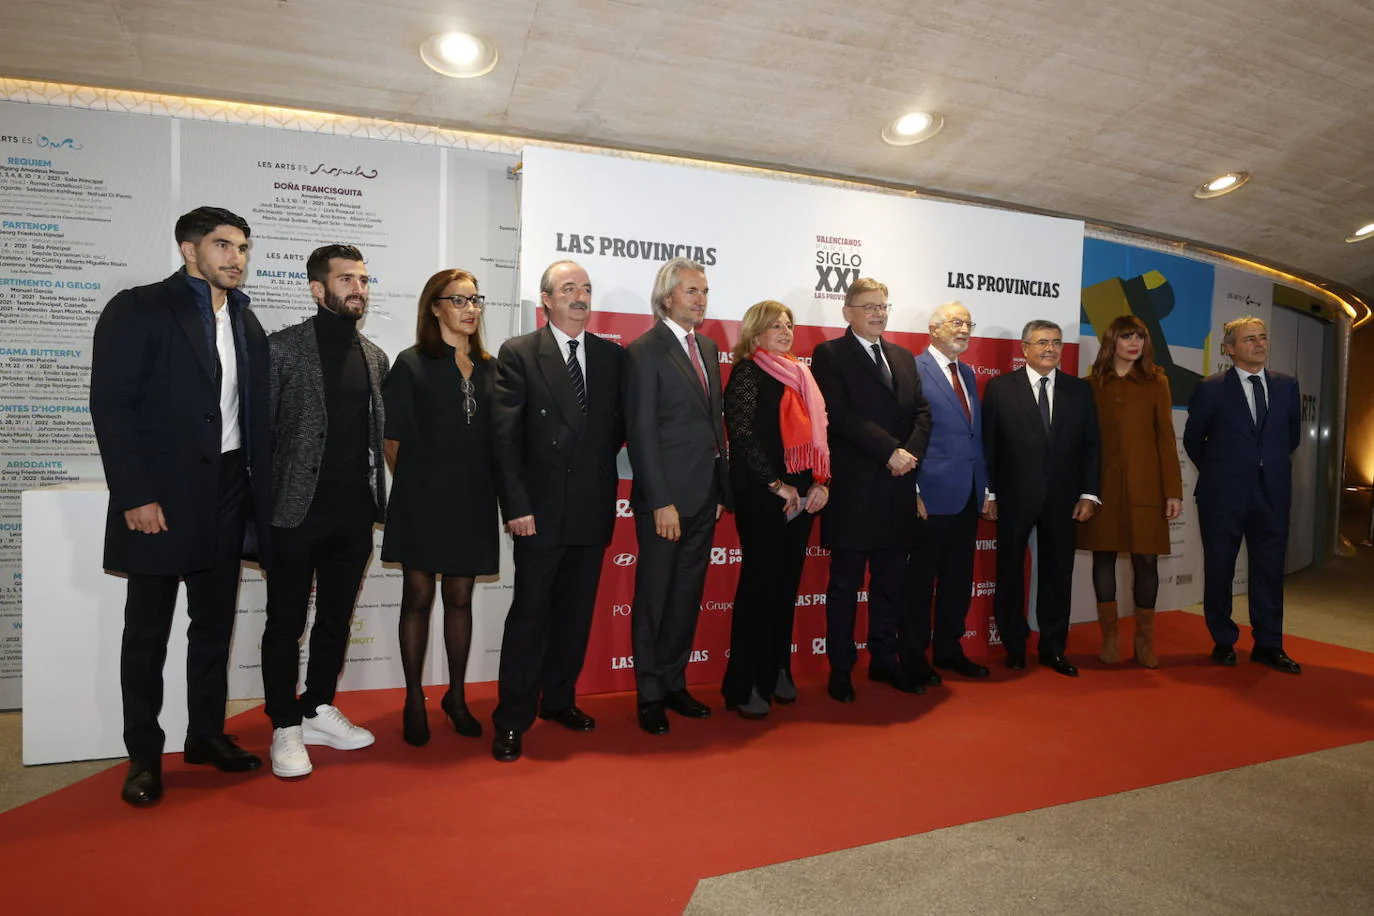 Fotos: Fotos de la gala Valencianos para el Siglo XXI 2021